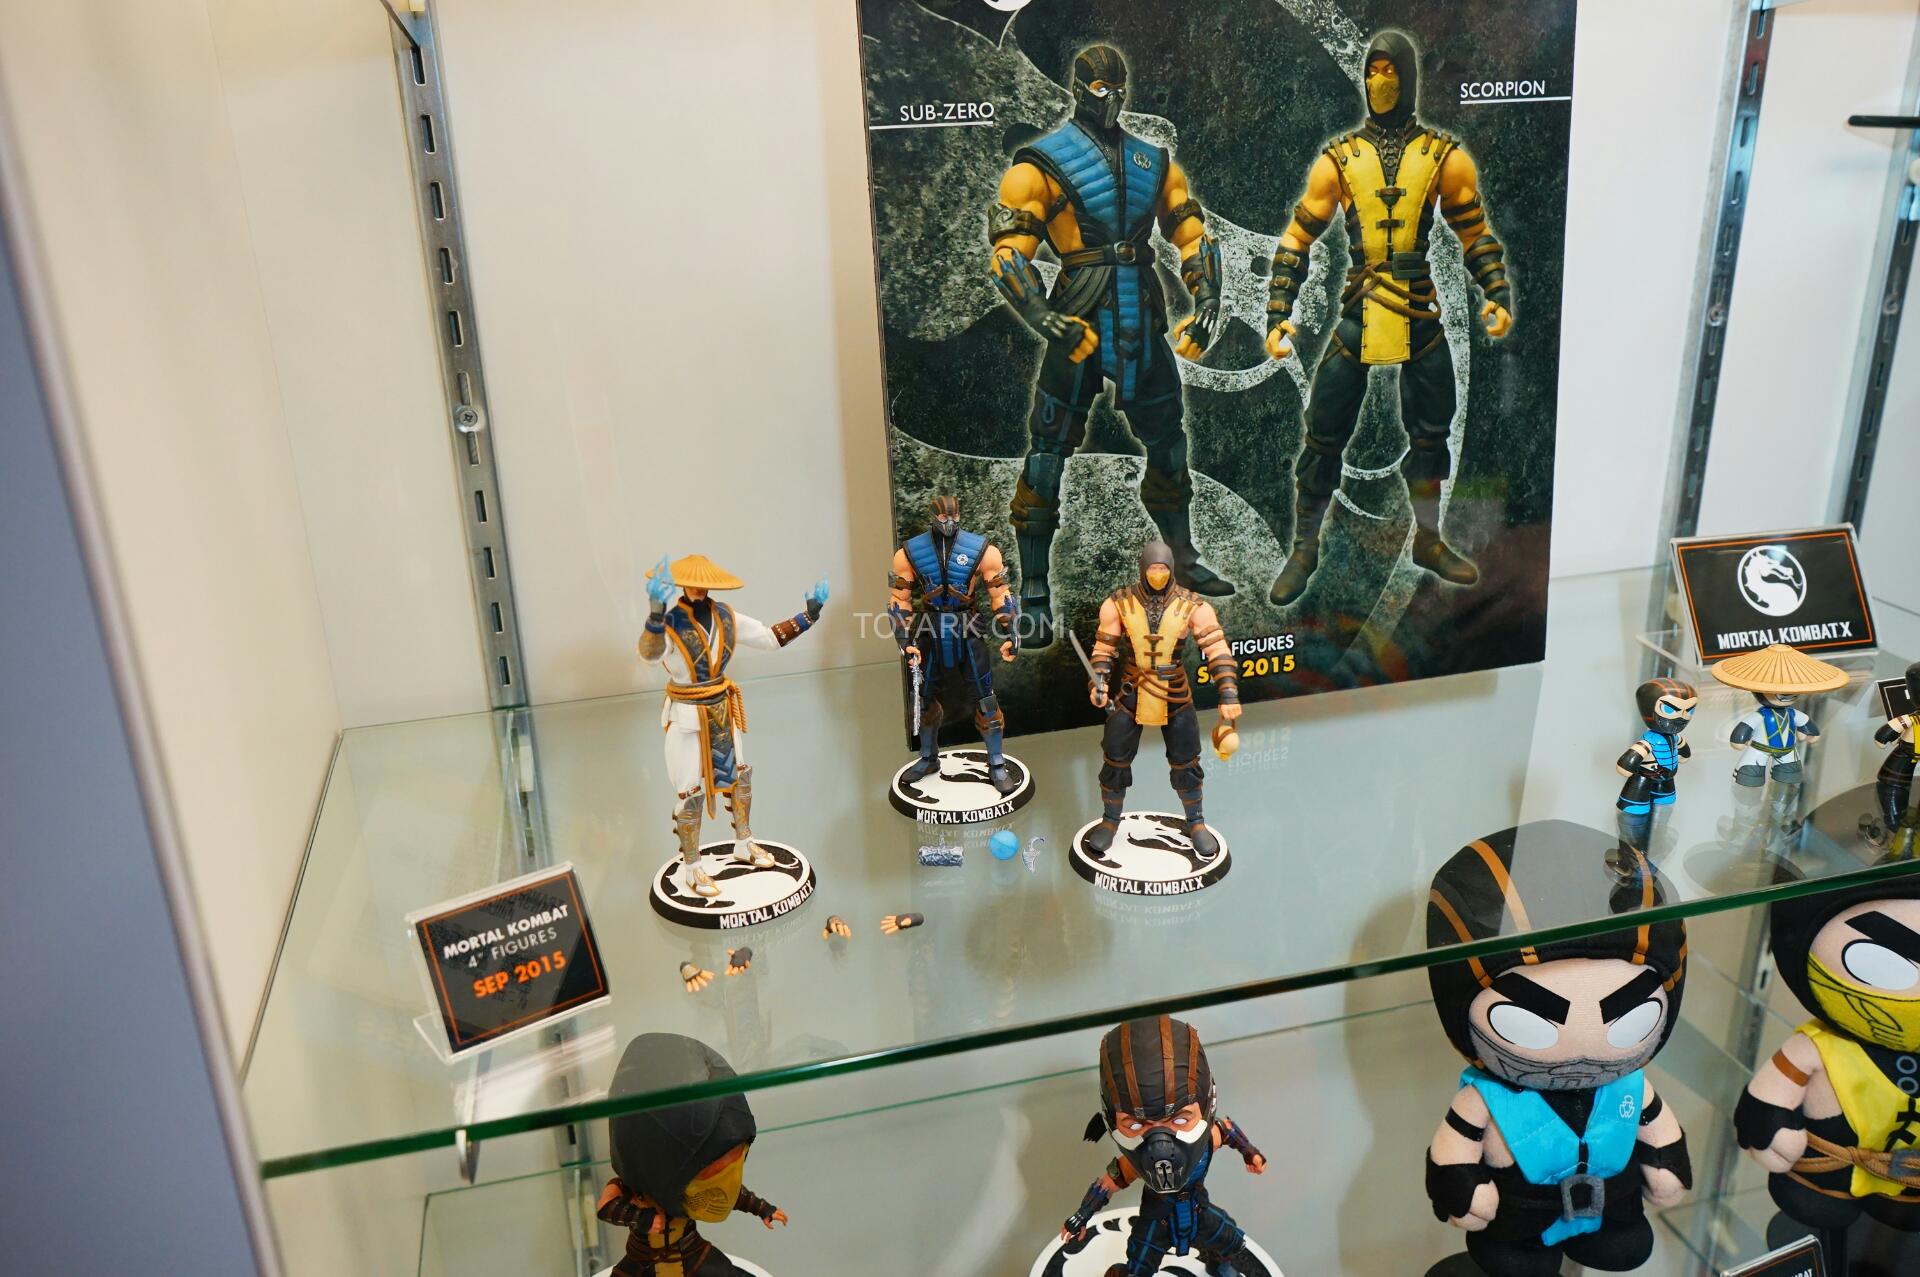 Đấu sĩ Mortal Kombat X xuất hiện tại hội chợ đồ chơi